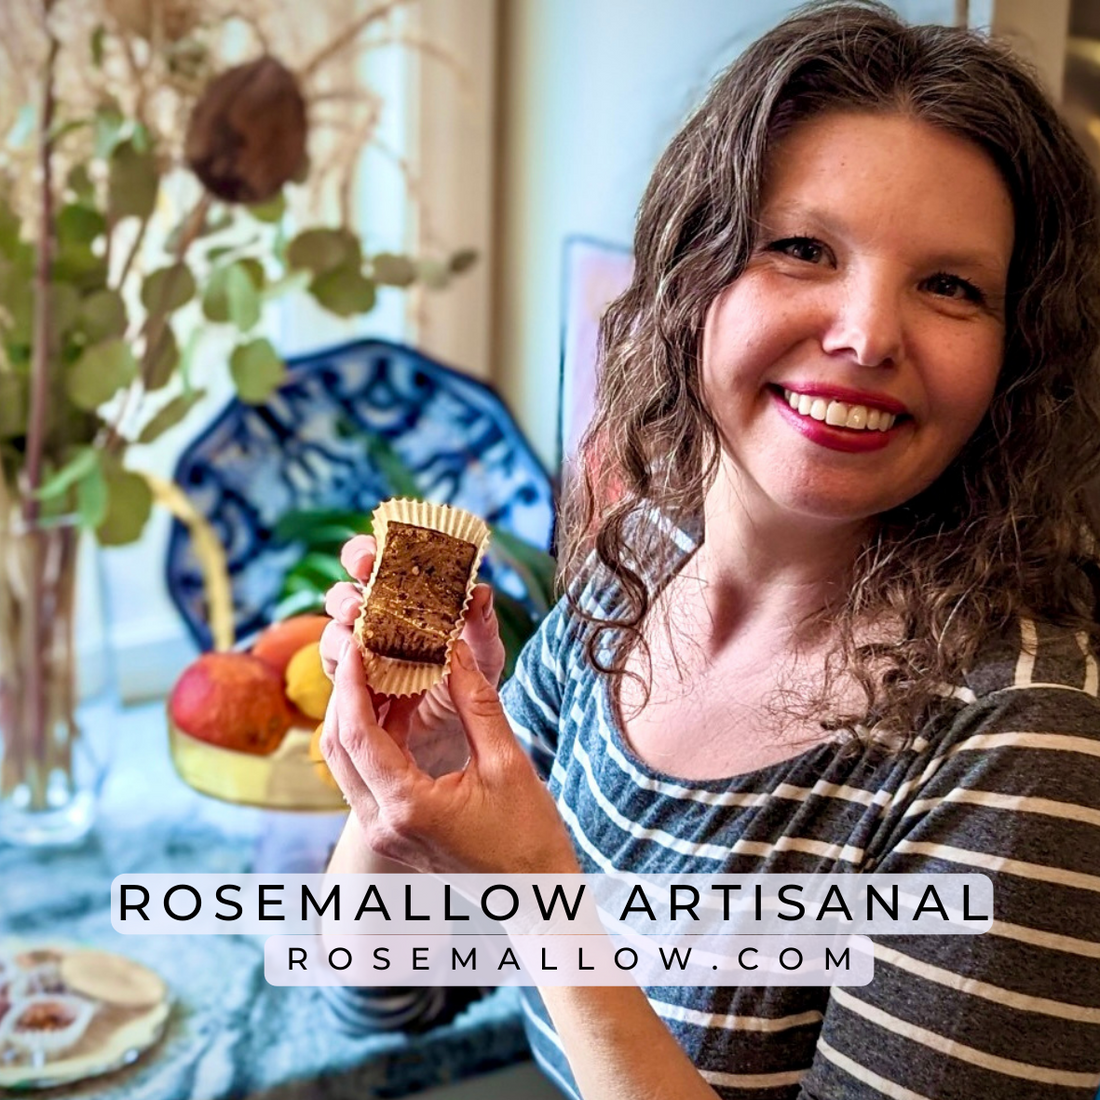 Entrepreneur stories- “flower - fruit - confection” - rosemallow artisanal in go solo magazine